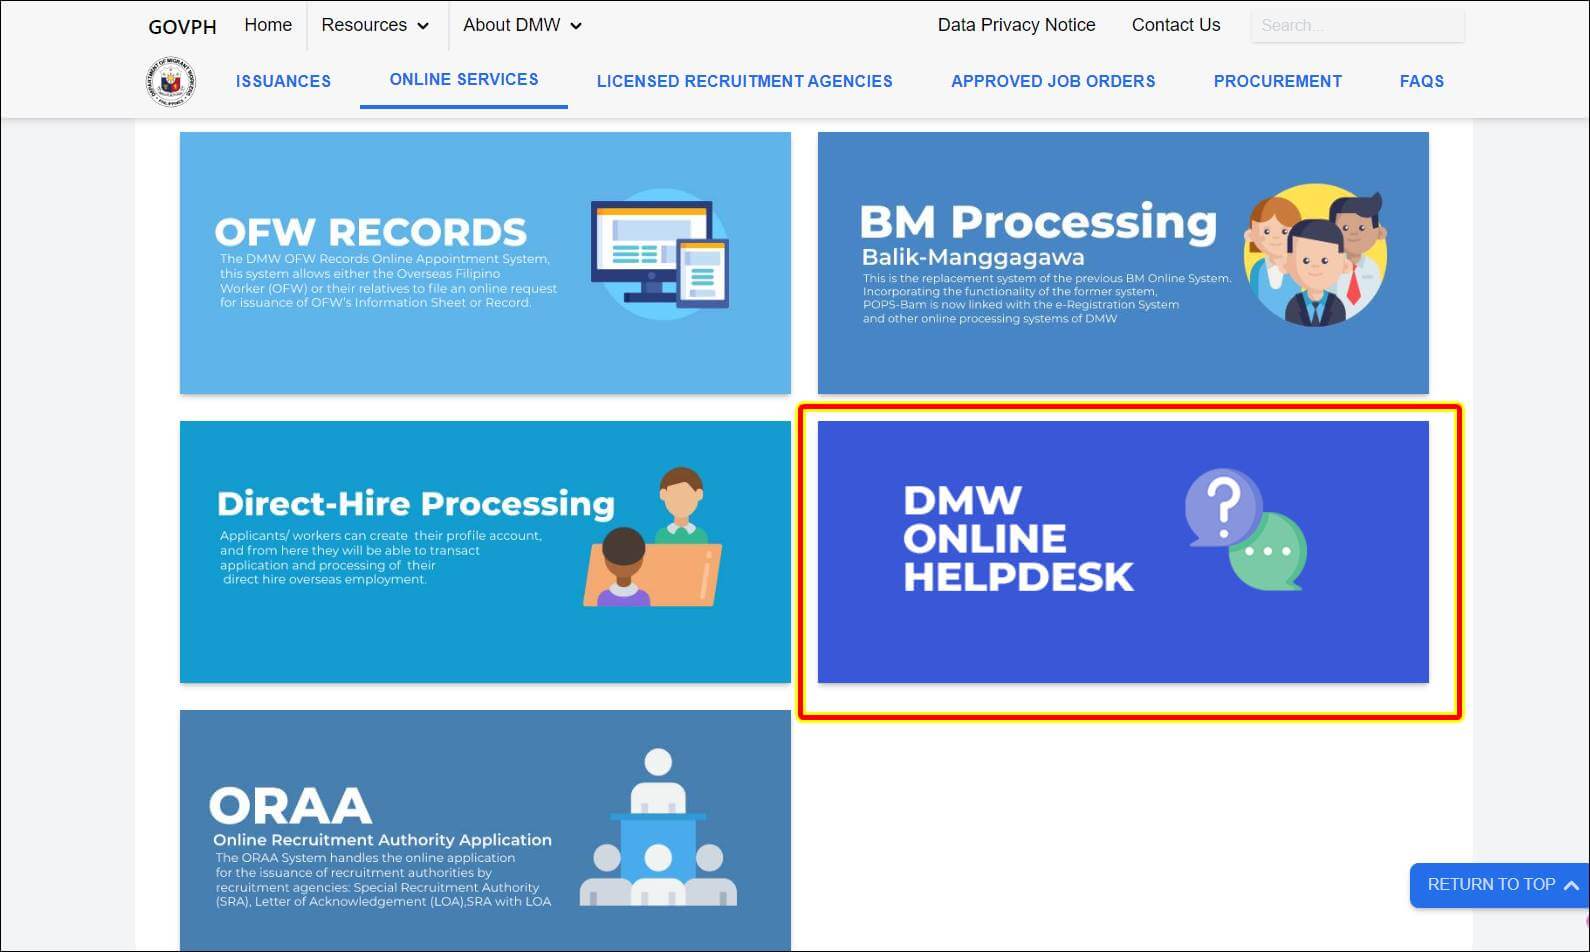 dmw online helpdesk